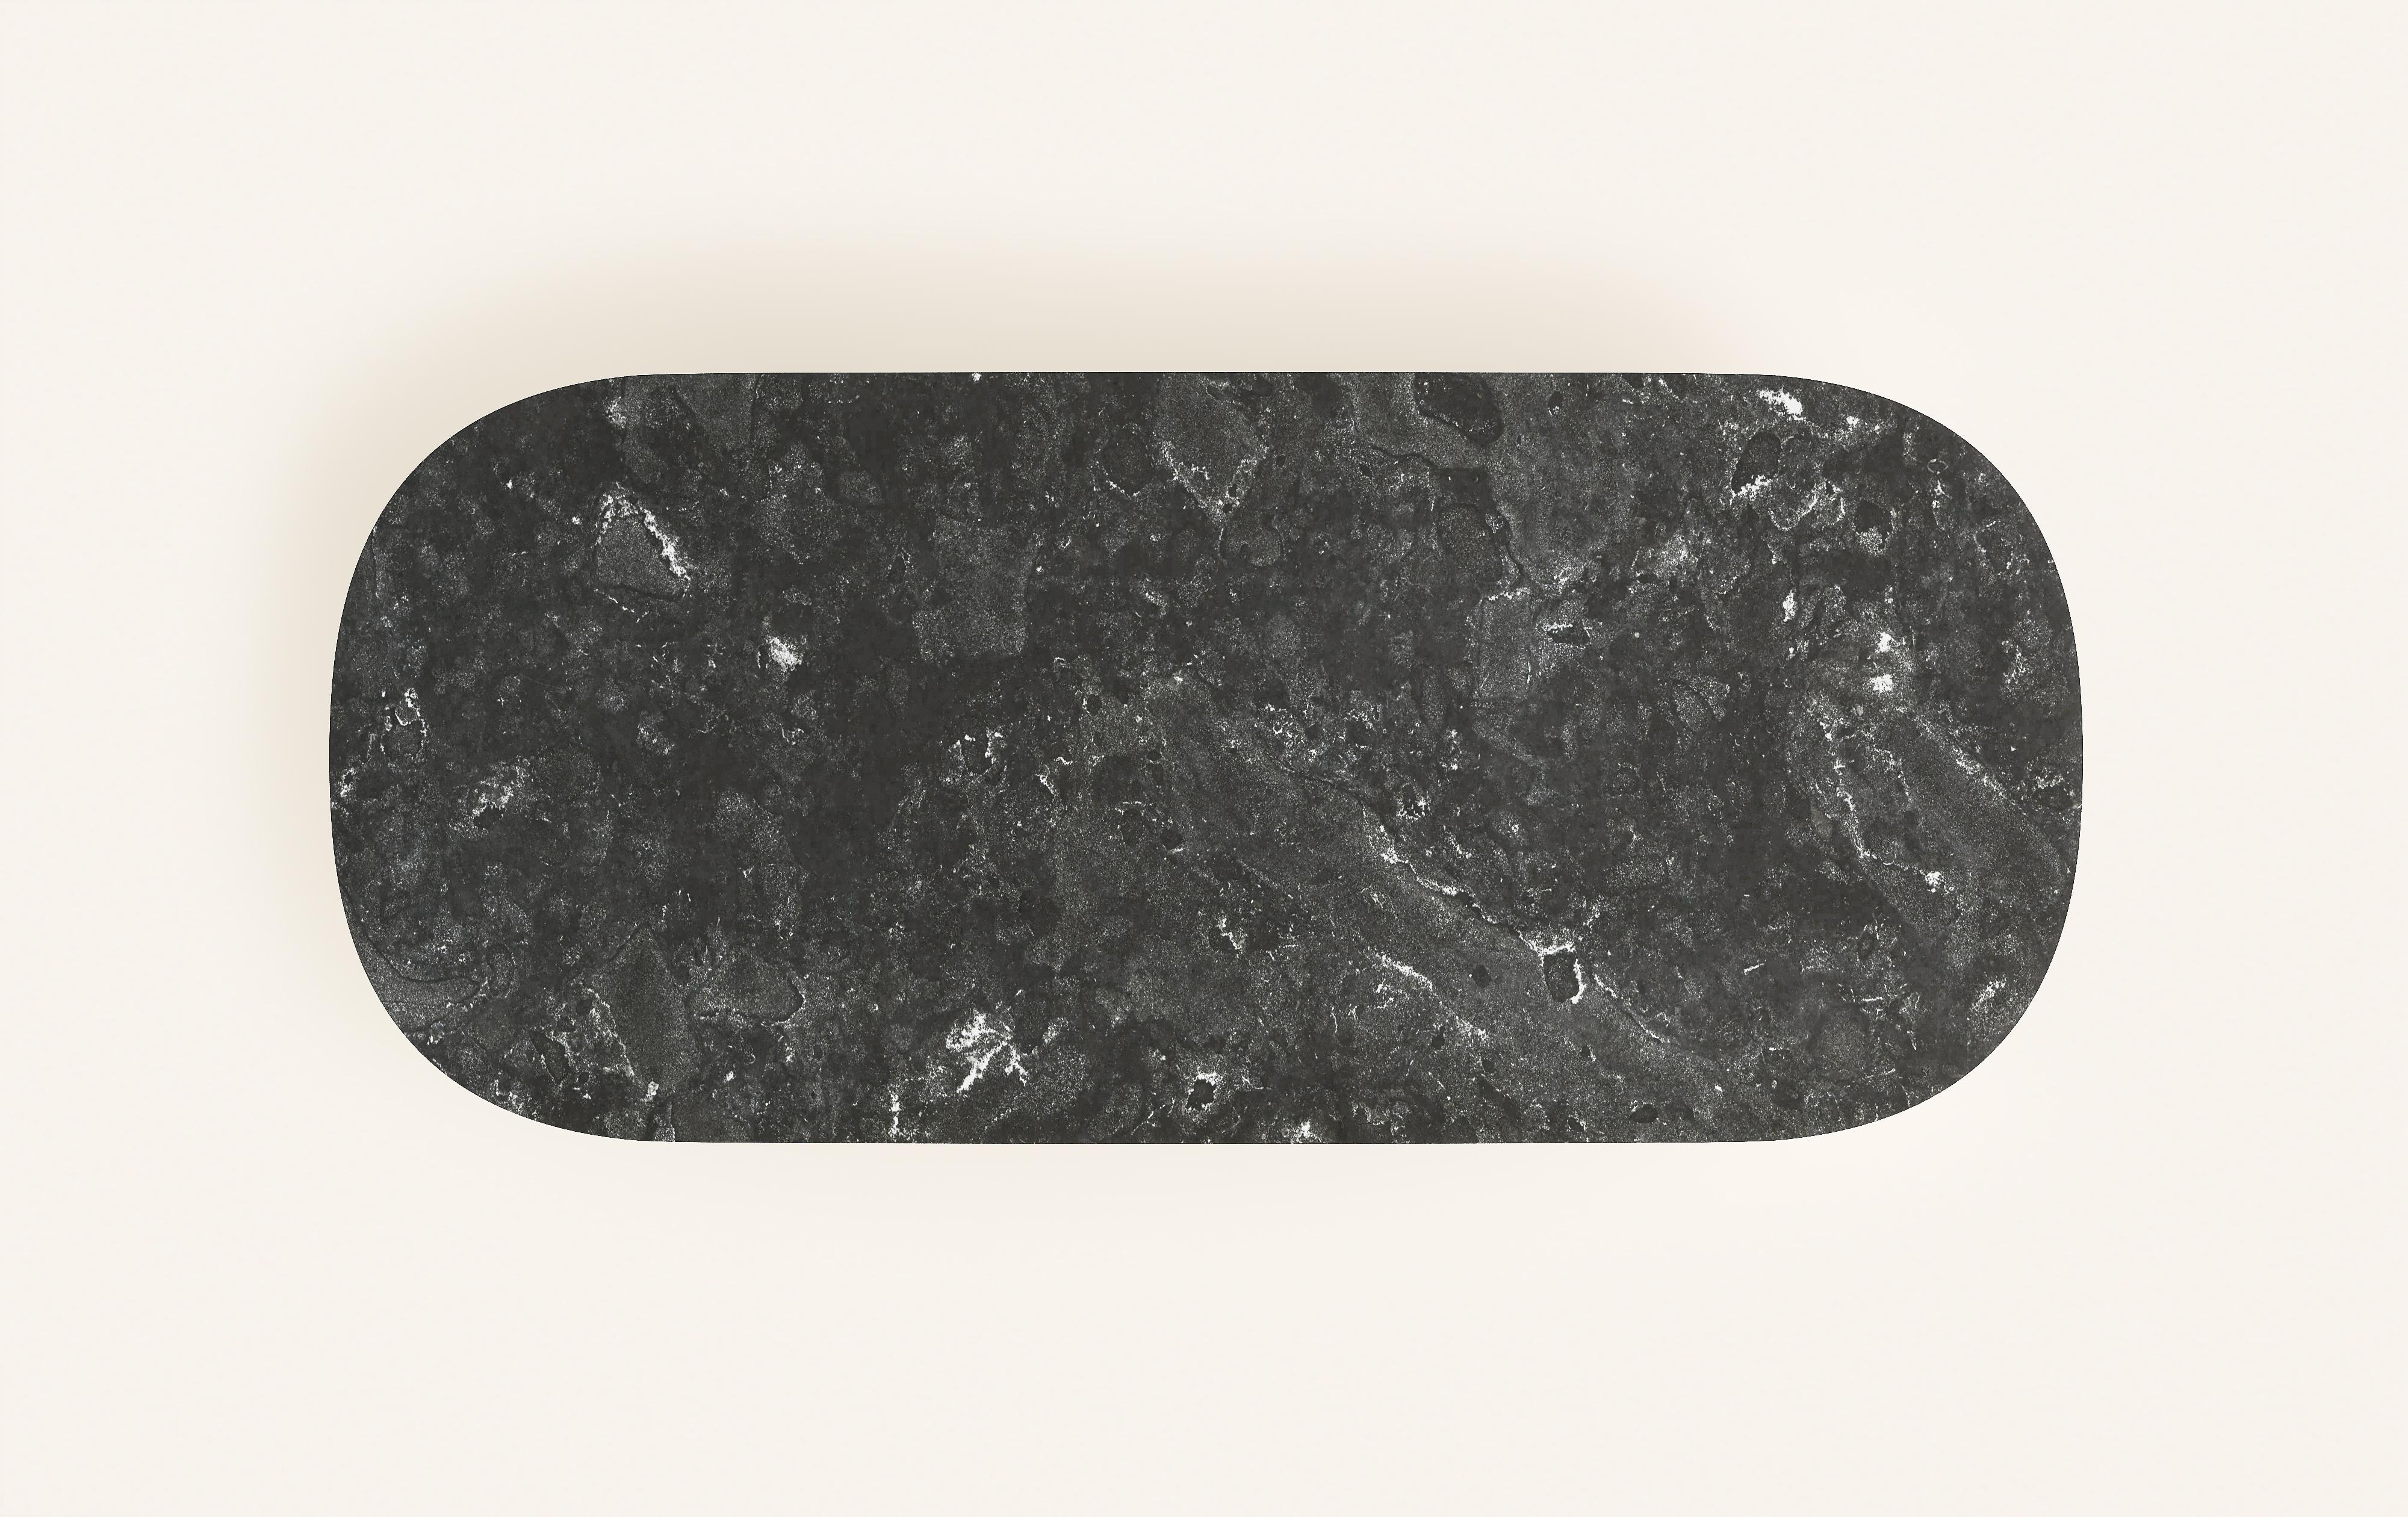 FORM(LA) Cono Oval Dining Table 118”L x 48”W x 30”H Nero Petite Granite In New Condition For Sale In Los Angeles, CA